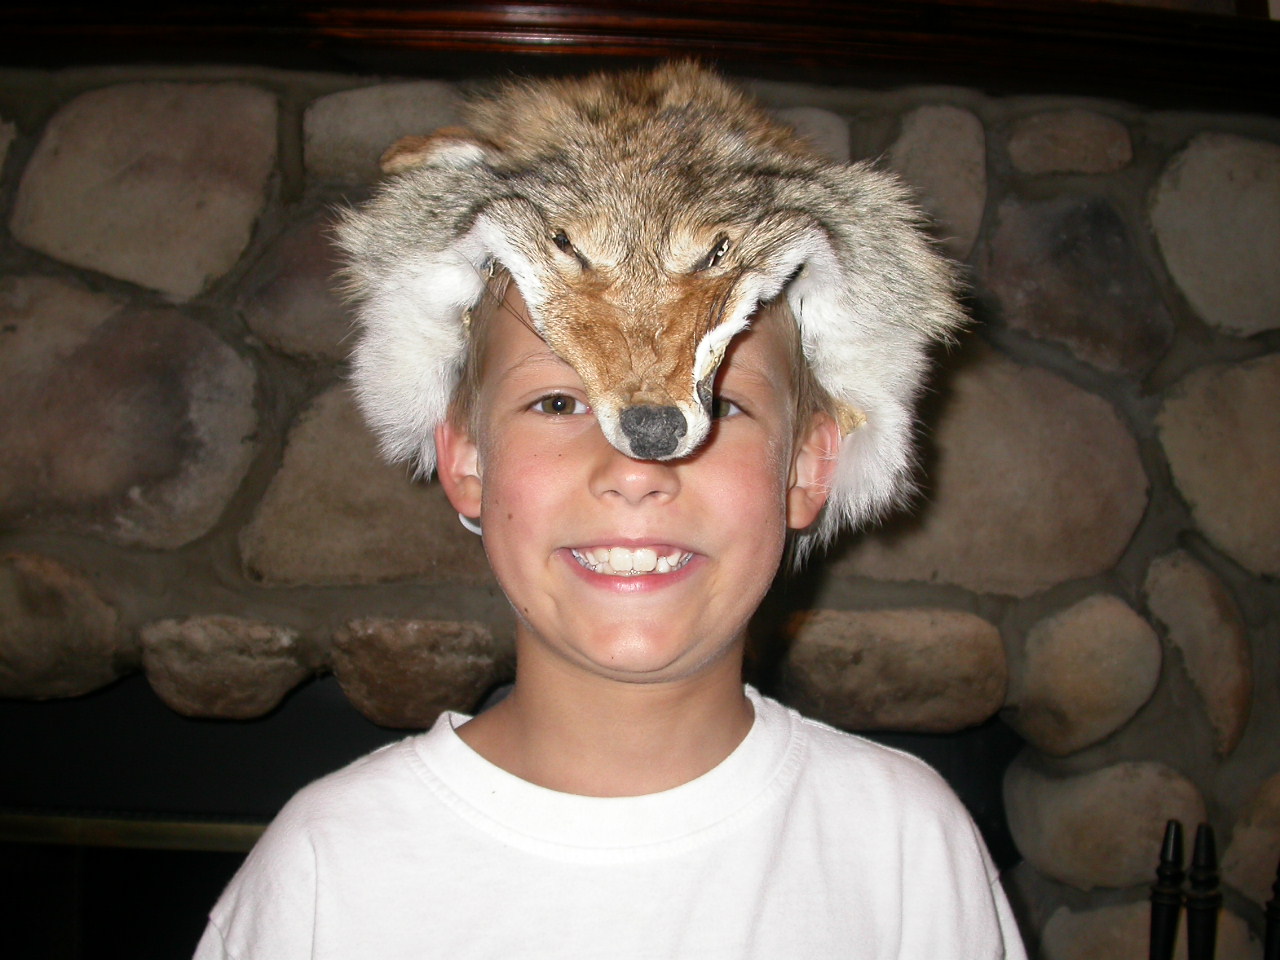 Coyote Face Mask coyote face masks, coyote halloween masks, coyote face halloween masks